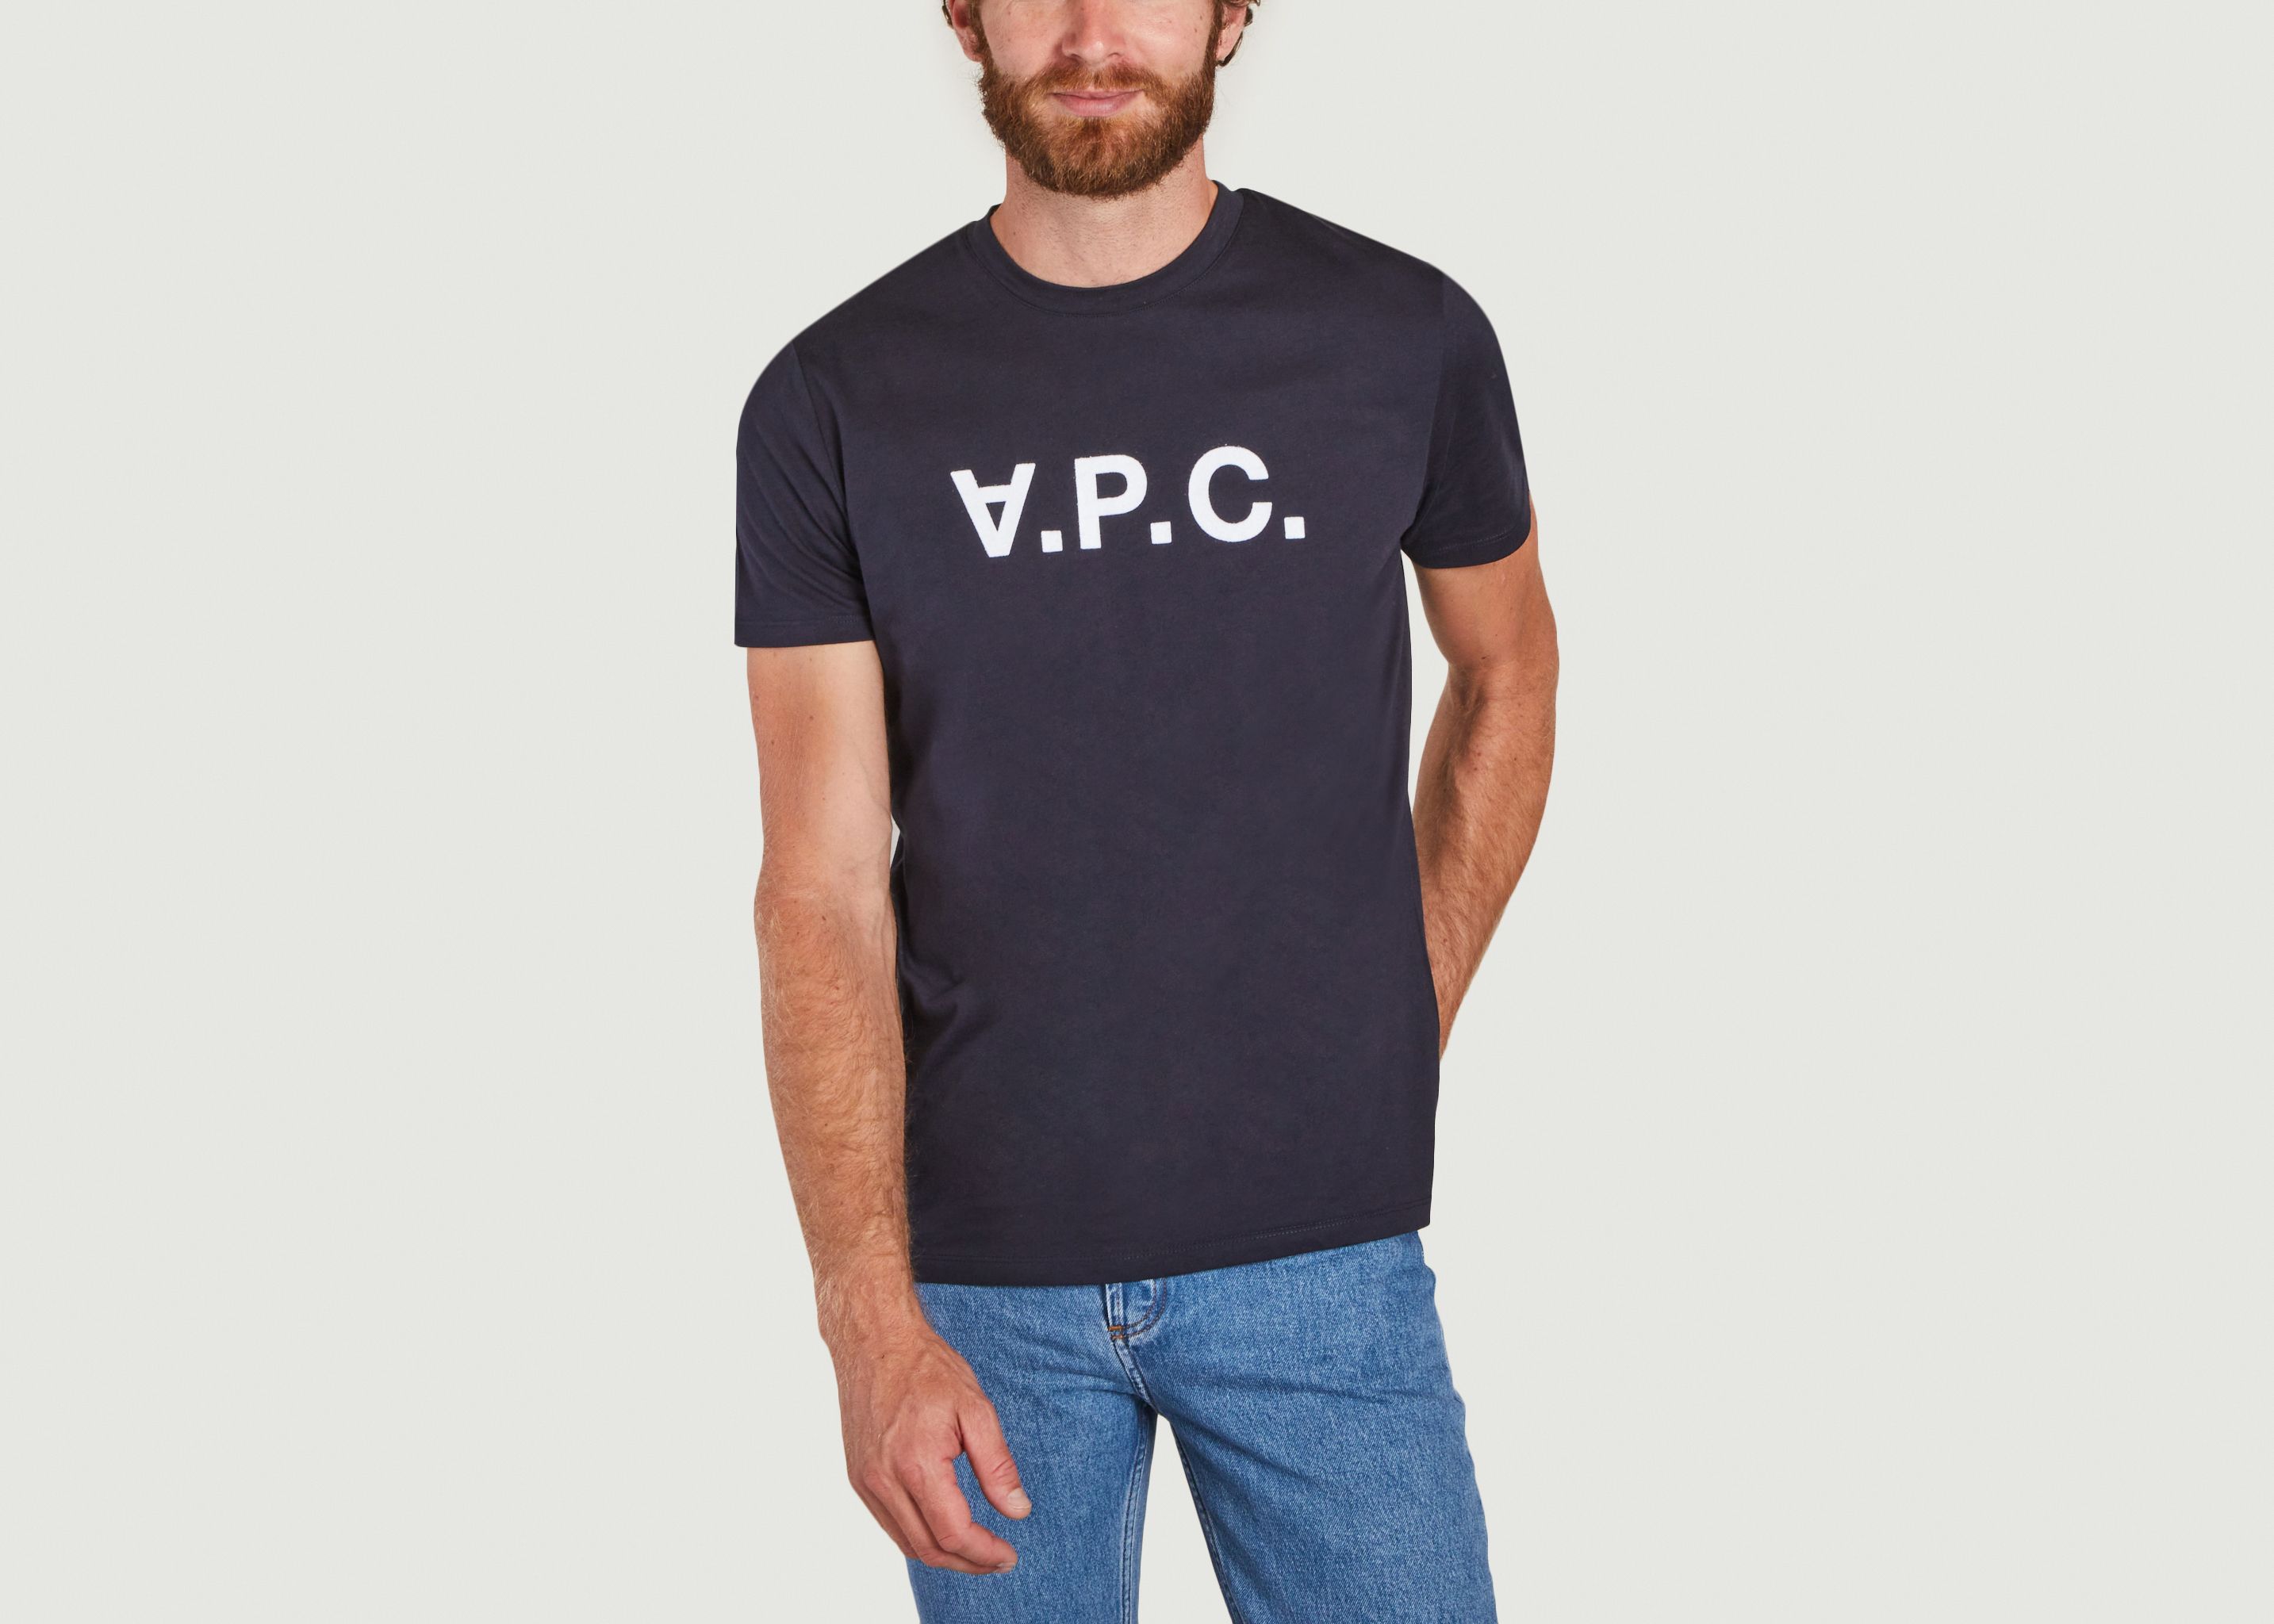 VPC organic cotton t-shirt - A.P.C.